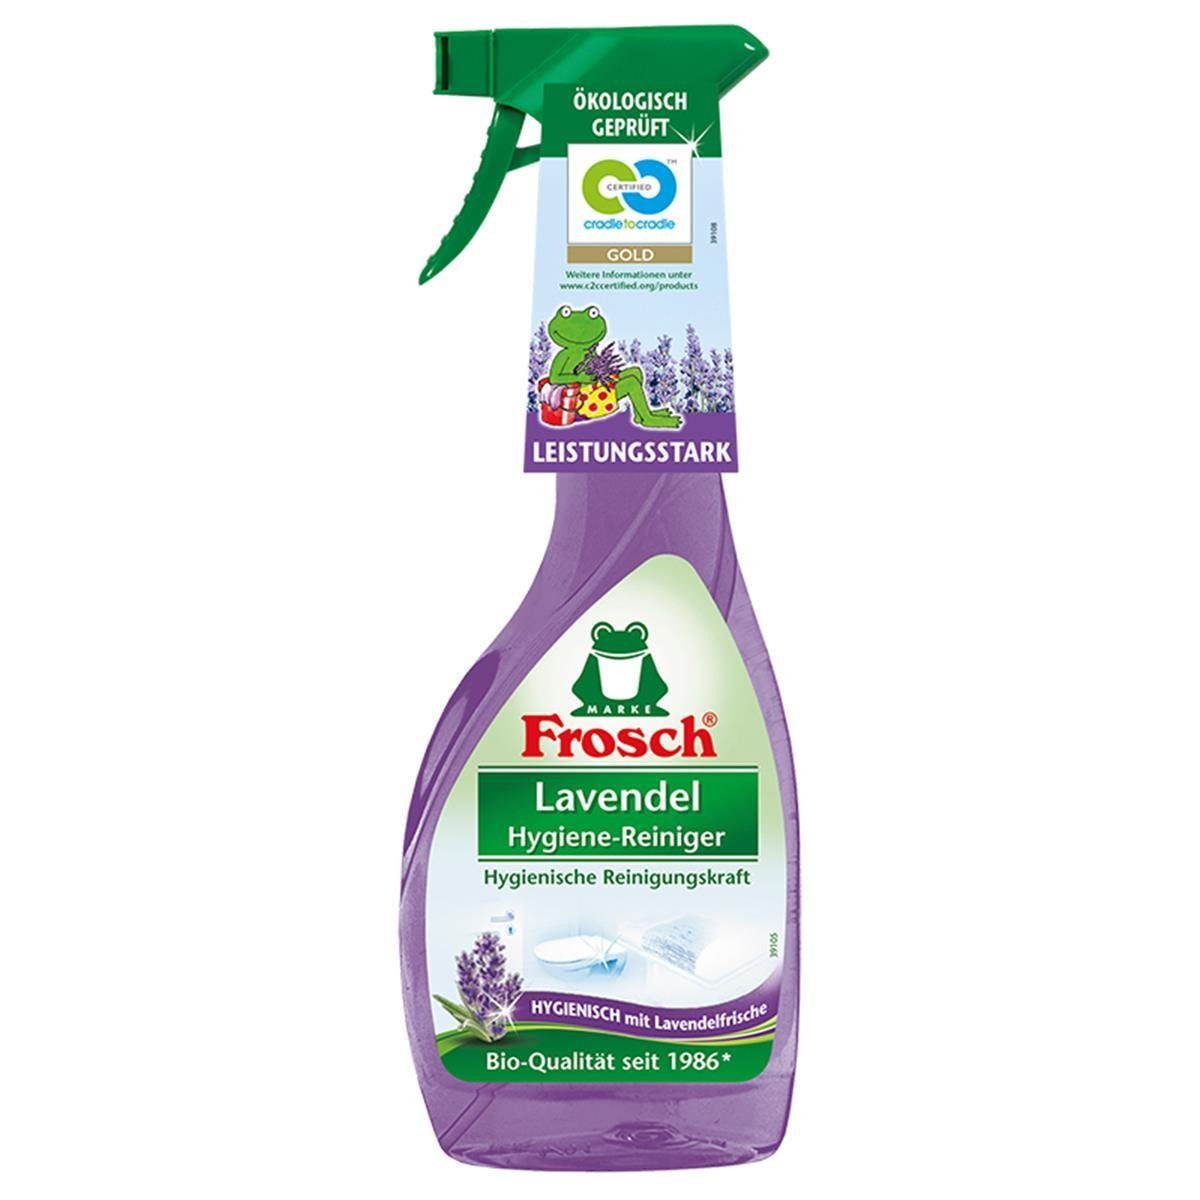 FROSCH Lavendel Spezialwaschmittel 4x ml Hygiene-Reiniger Sprühflasche 500 Frosch